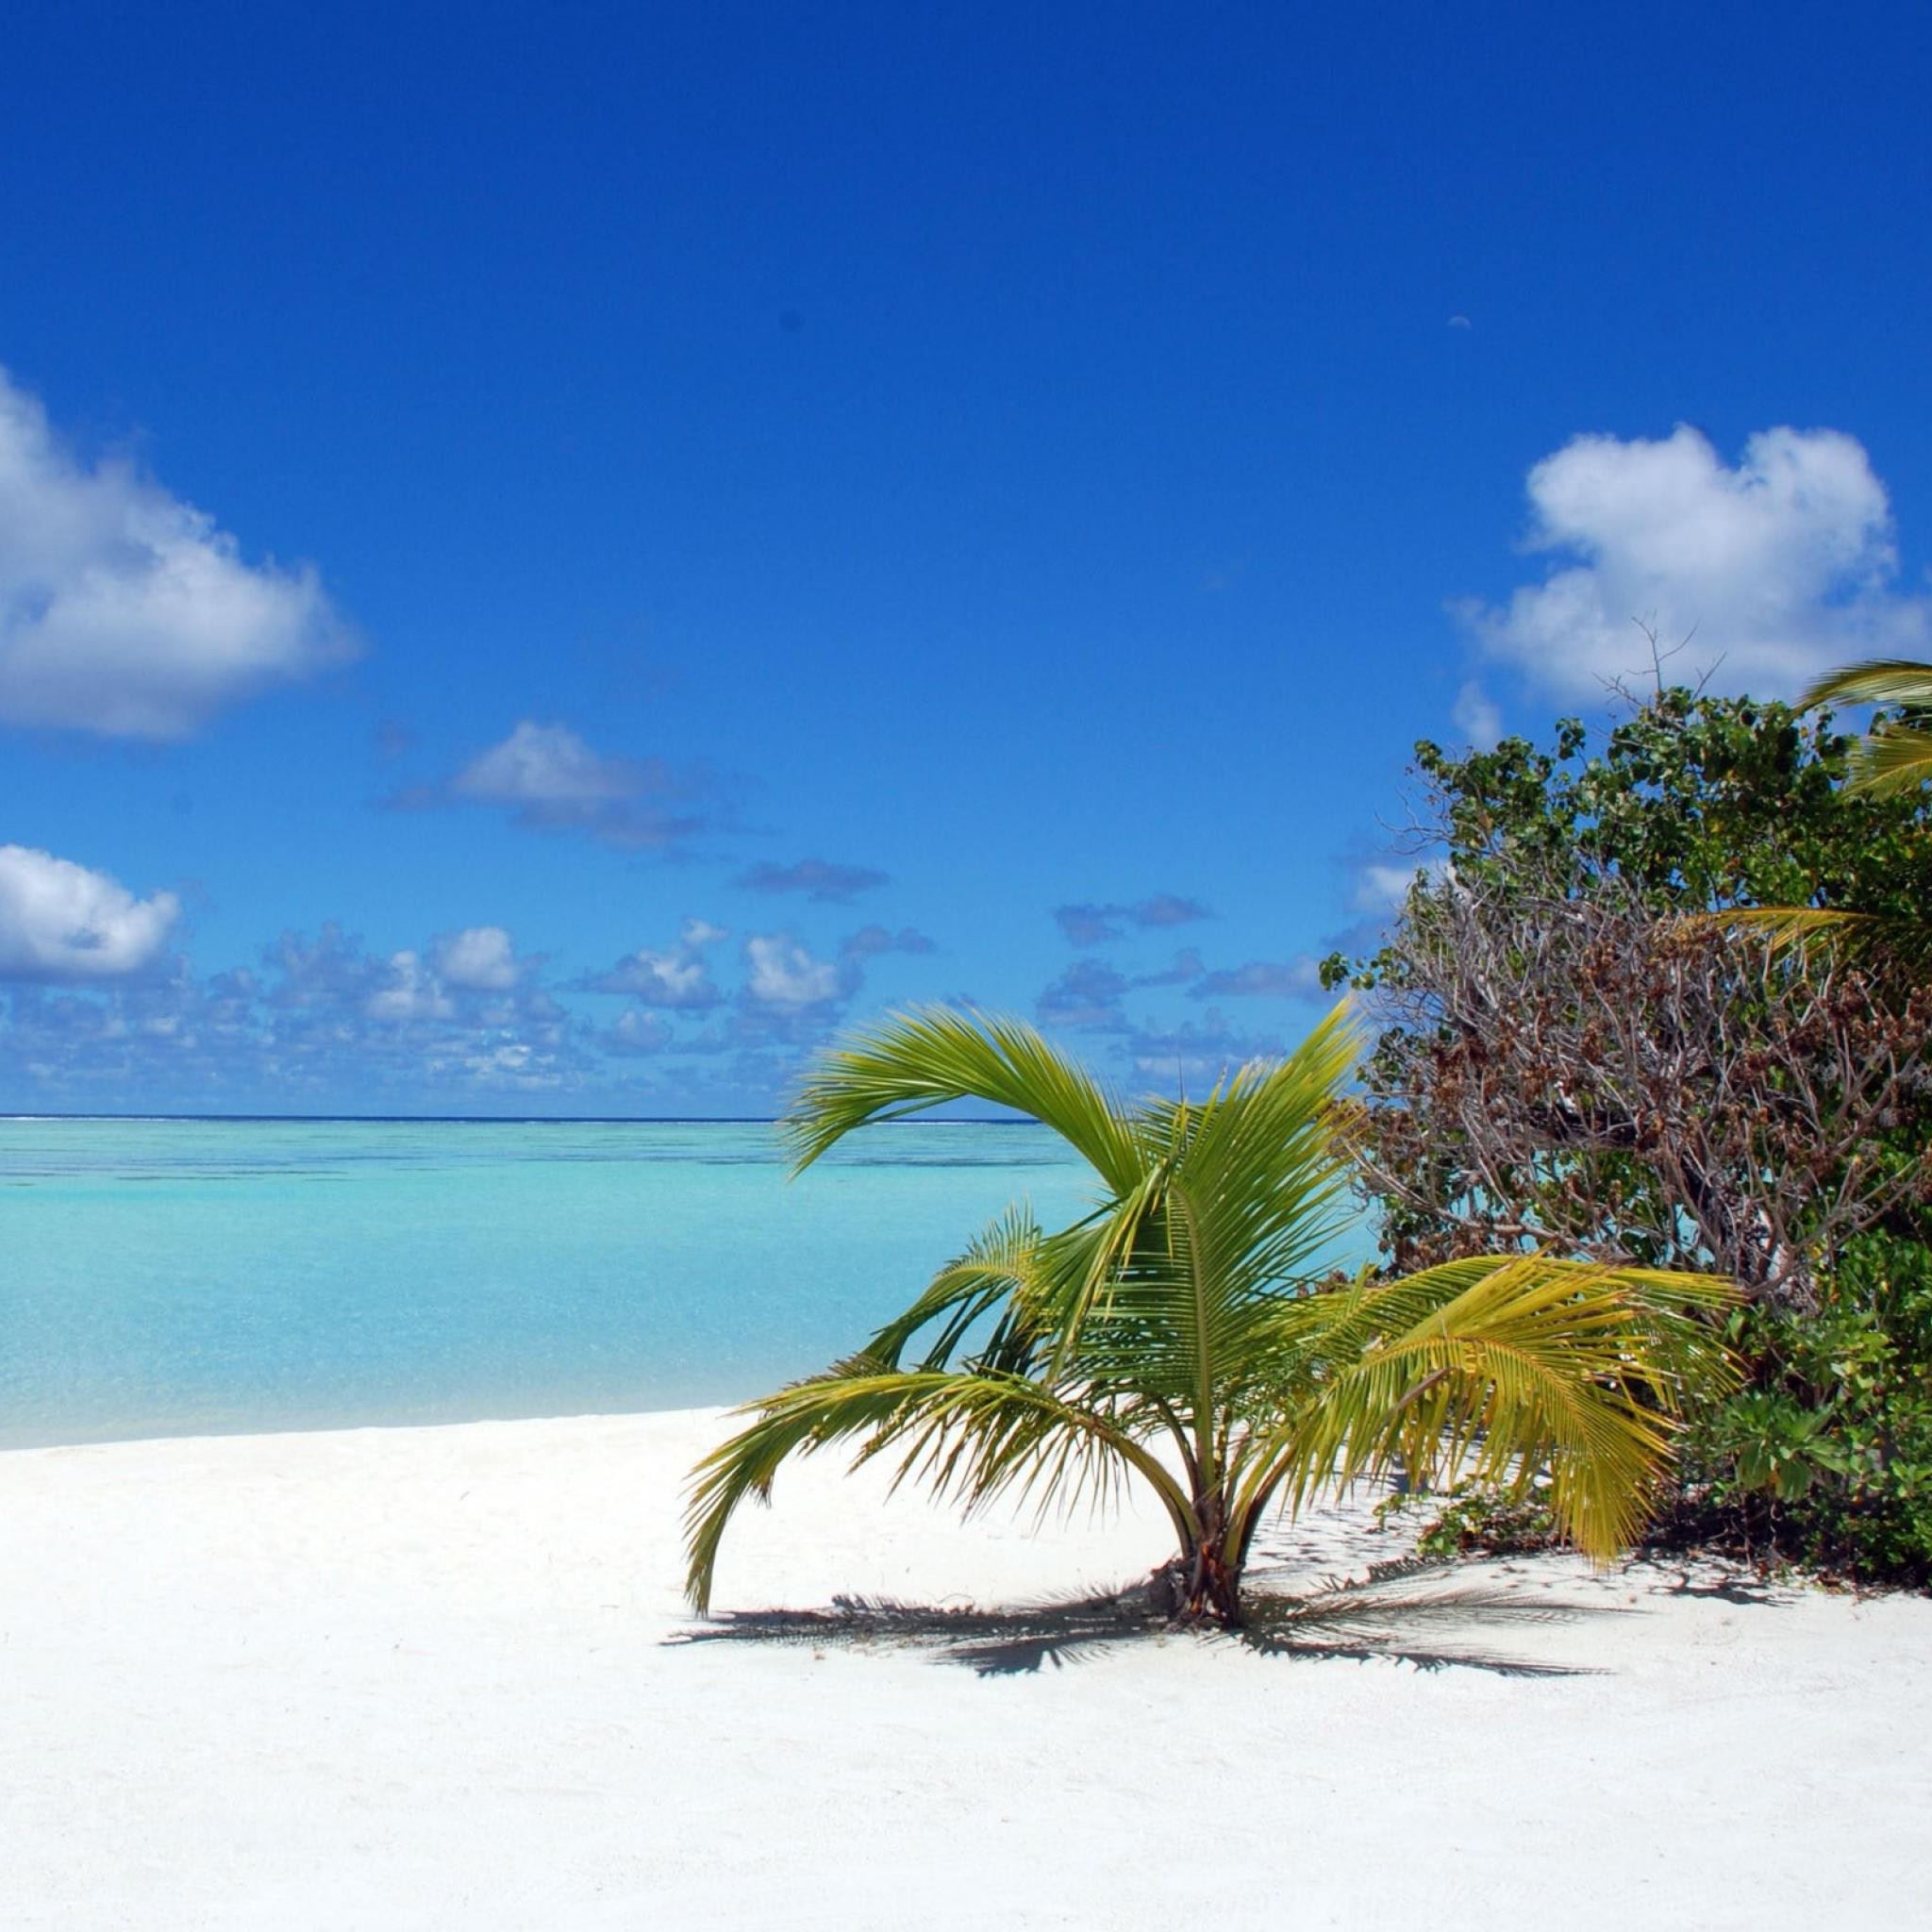 Maldives Beaches Palm Trees iPad Air wallpaper 